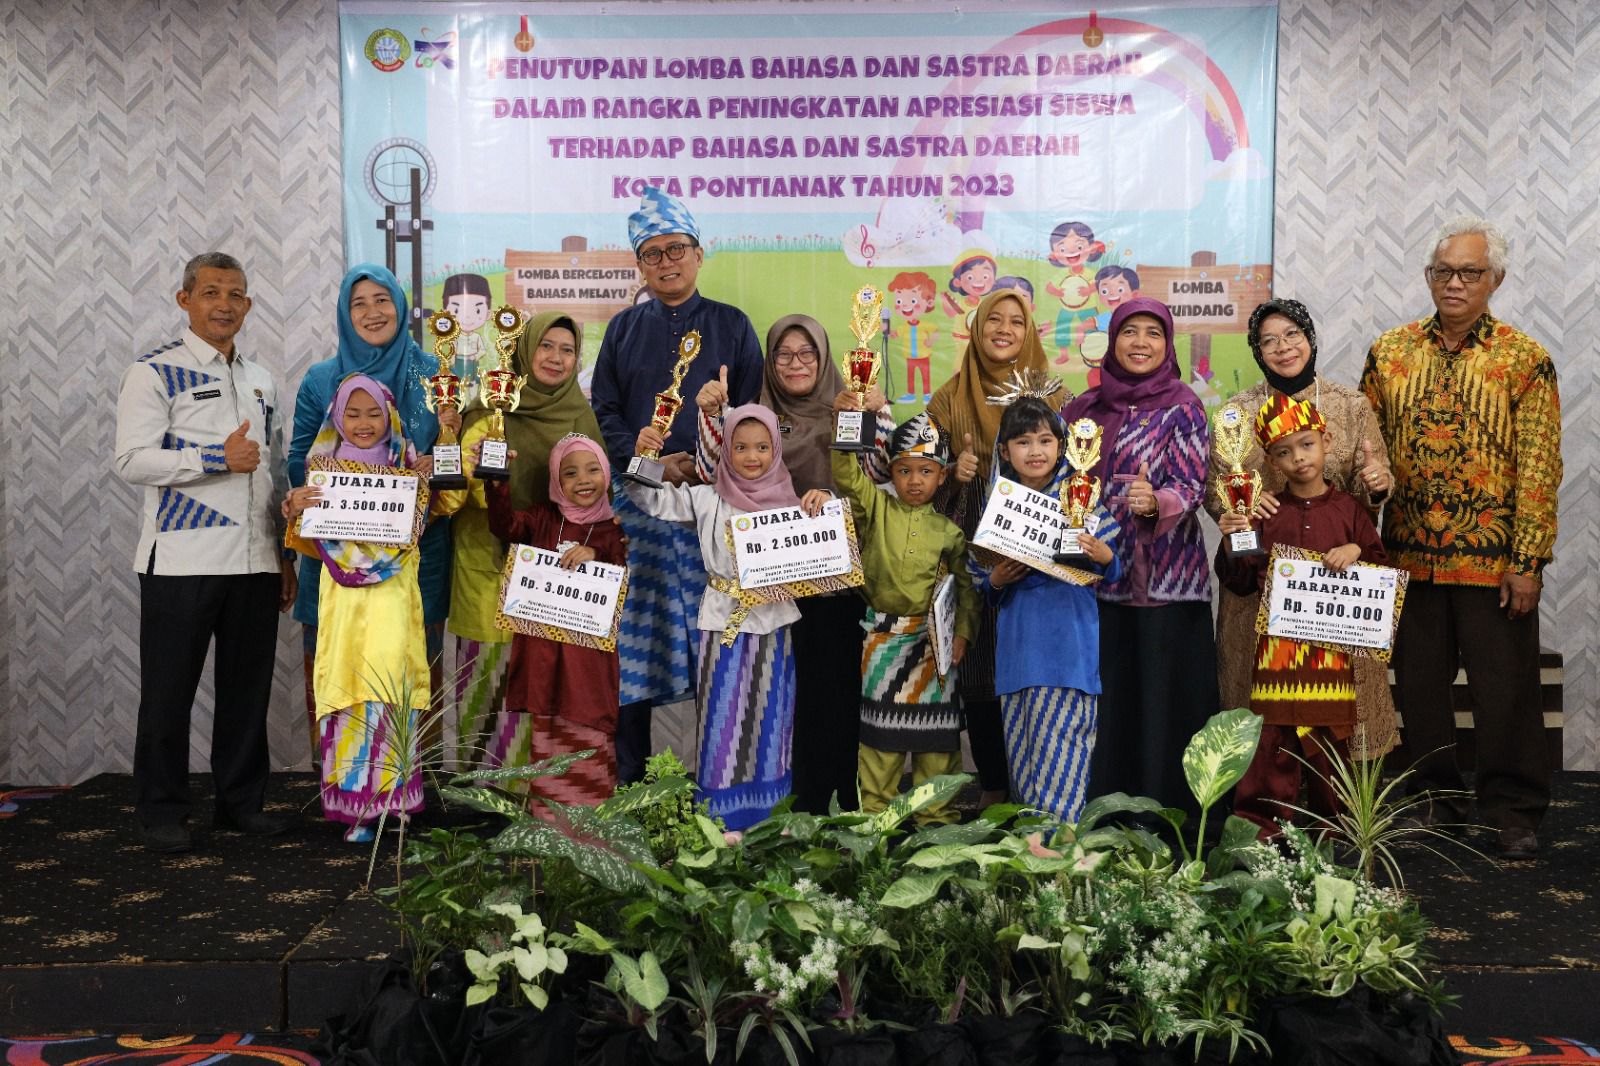 Para pemenang lomba berceloteh bahasa Melayu dan lomba tundang. (Foto: Kominfo Pontianak)